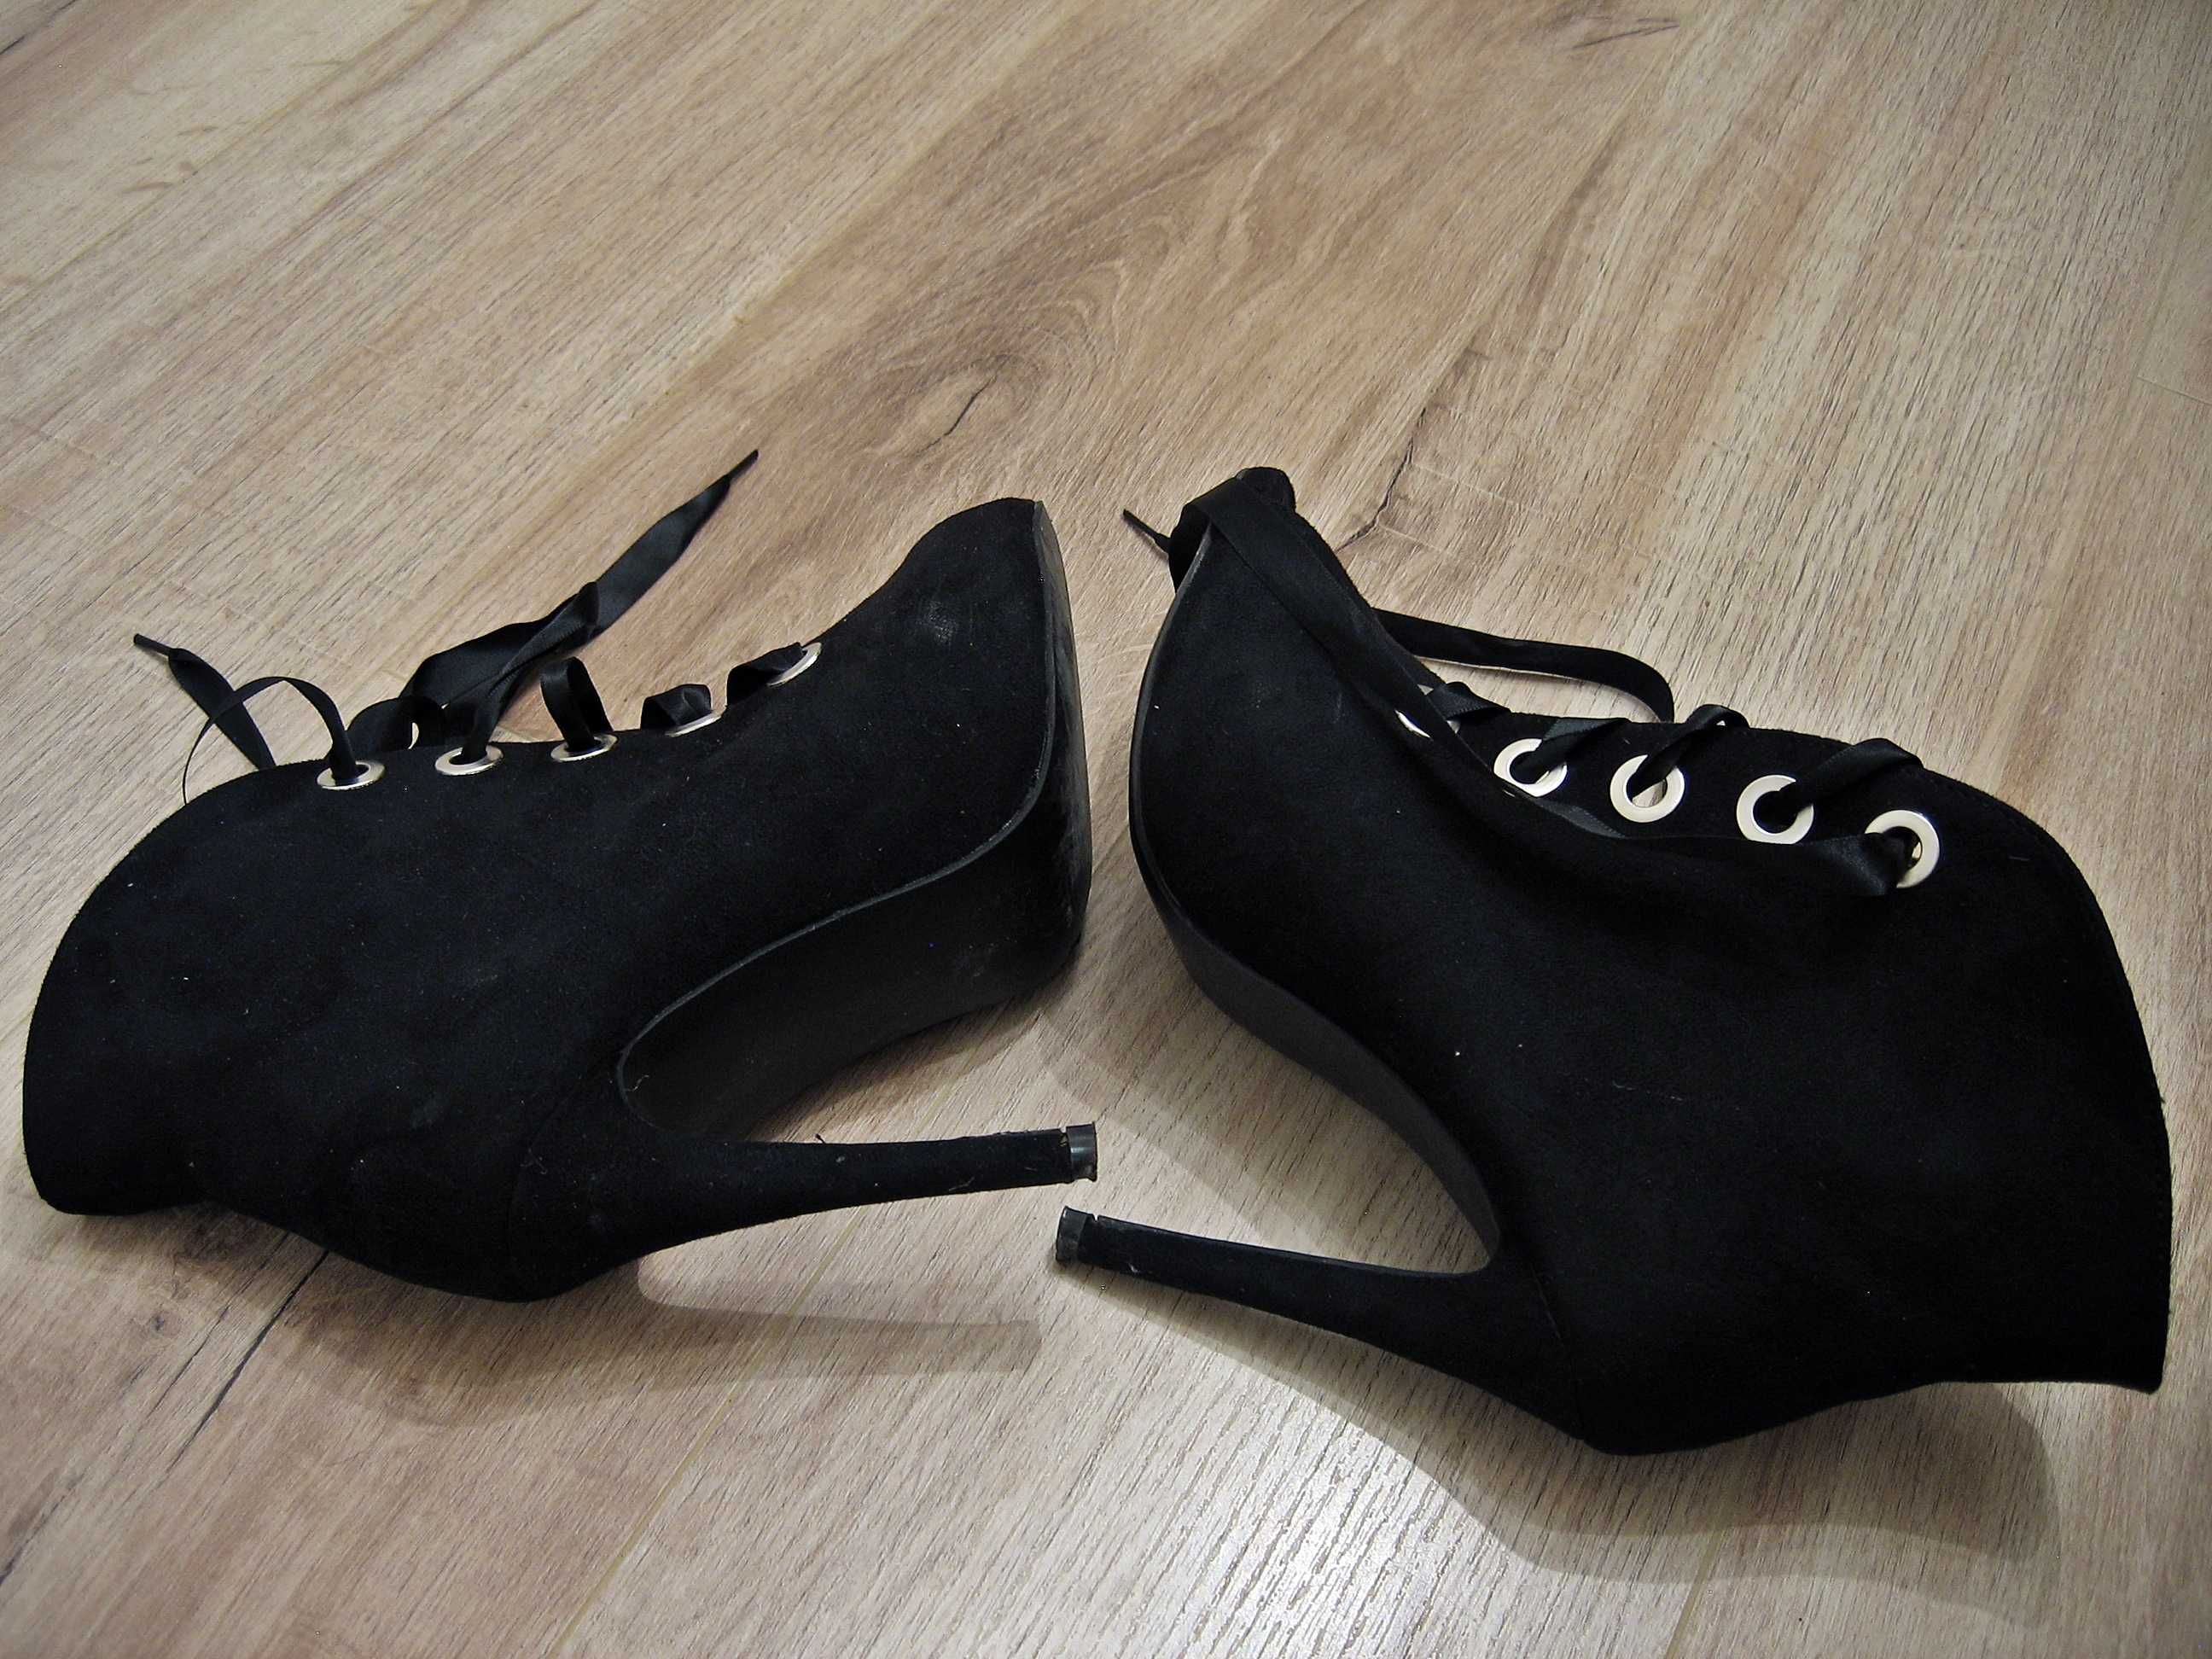 Czarne buty Bestelle, rozmiar 39, z dużym palcem, nubuk, używane